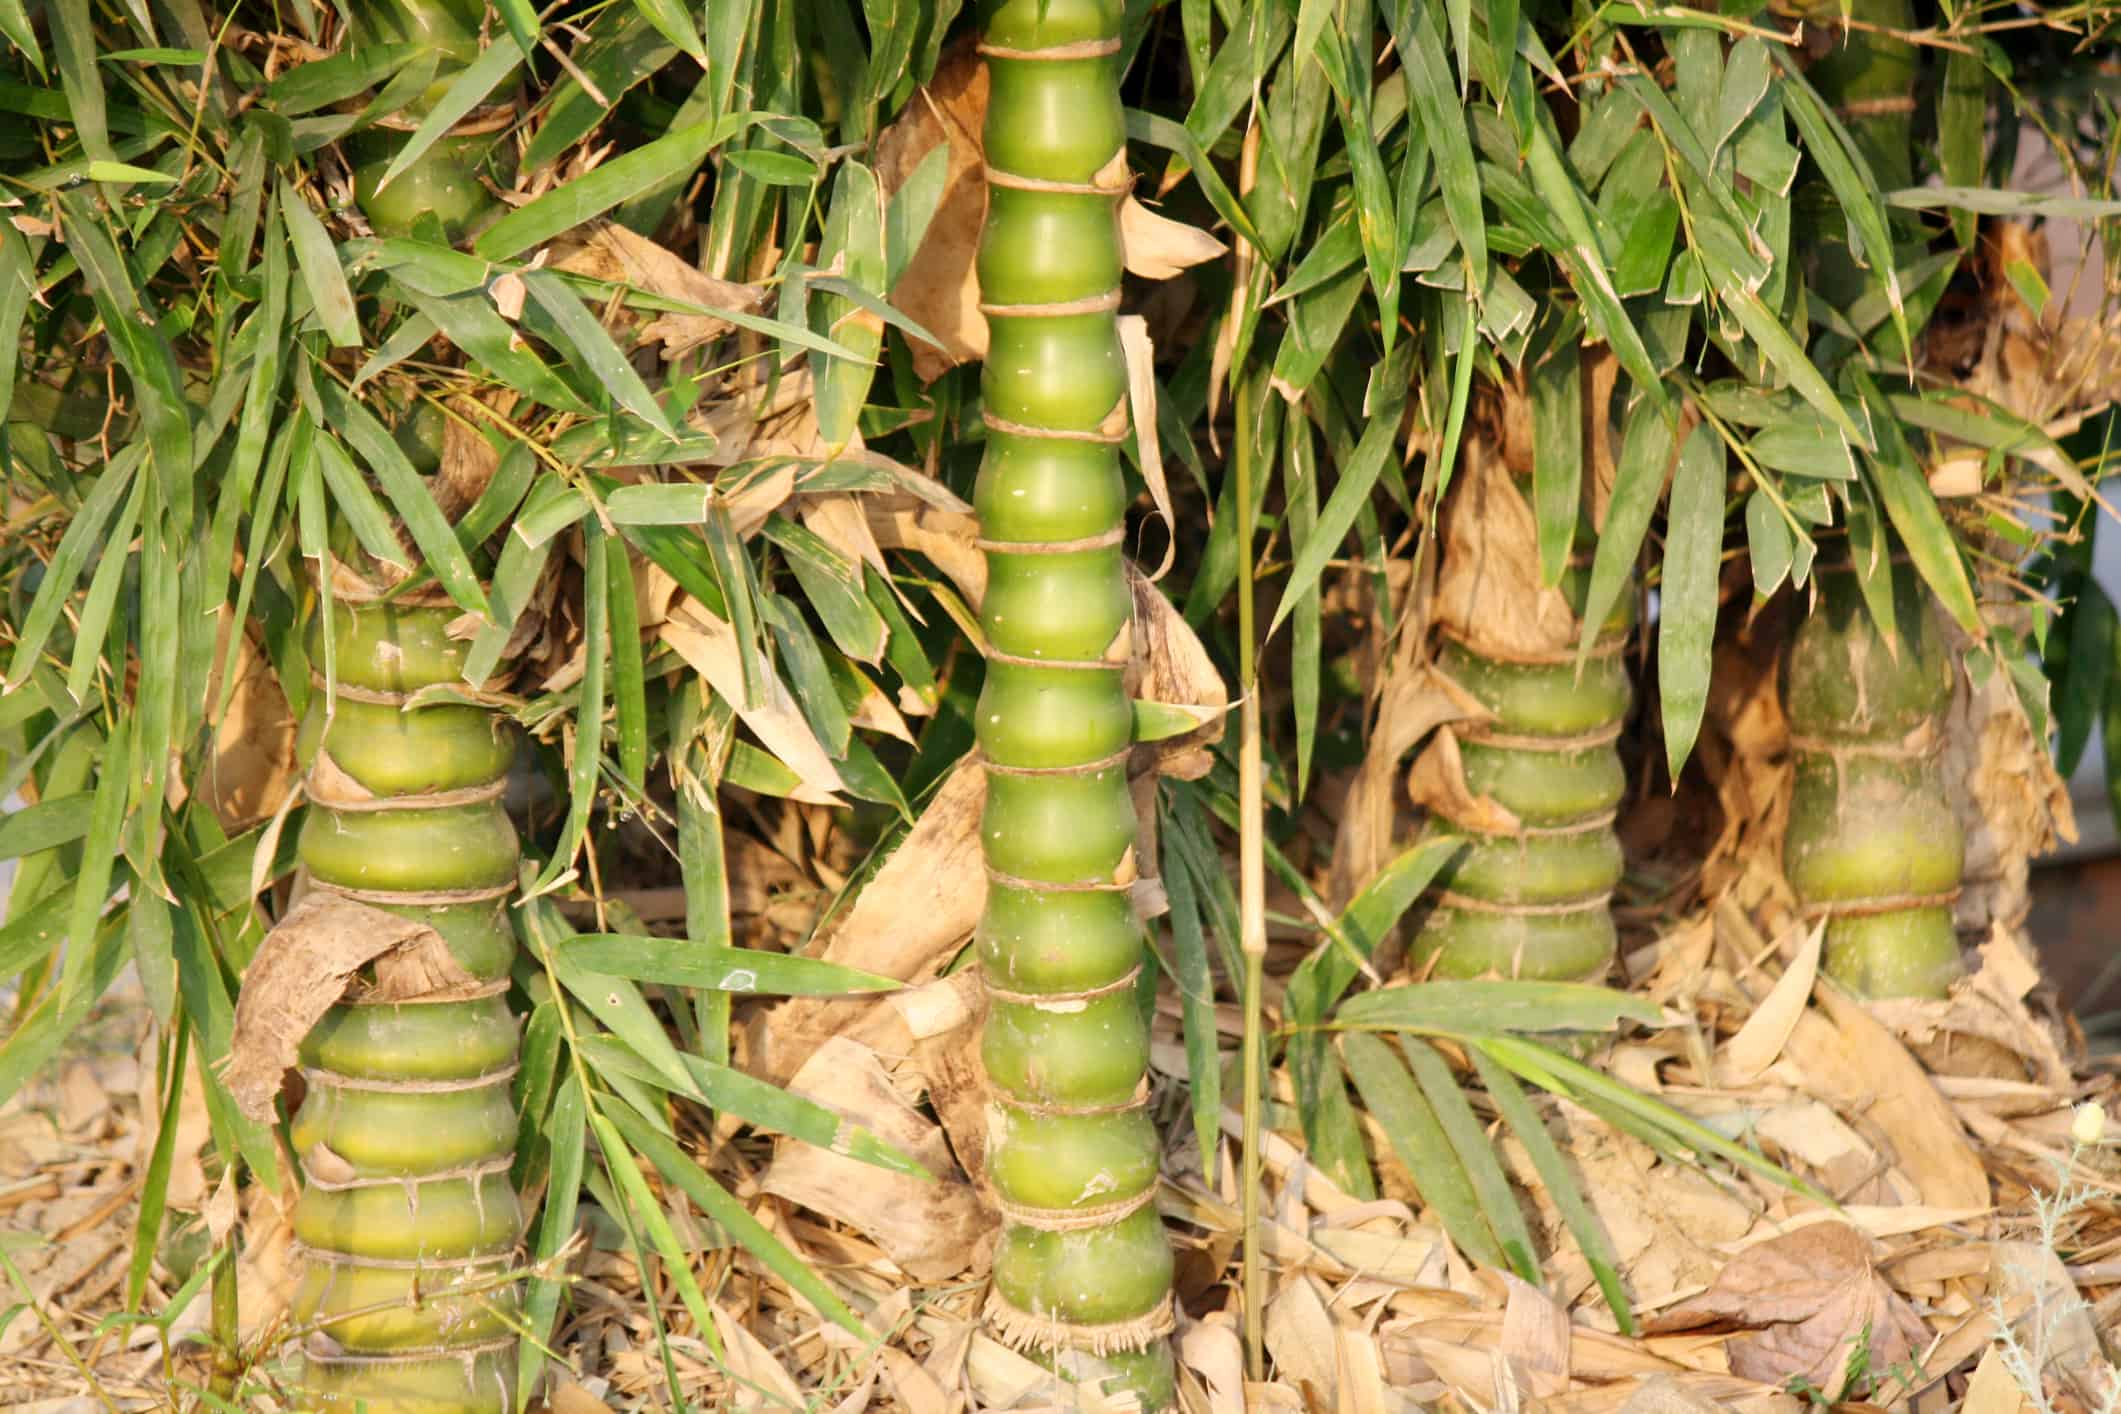 Buddha belly bamboo (Bambusa ventricusa)